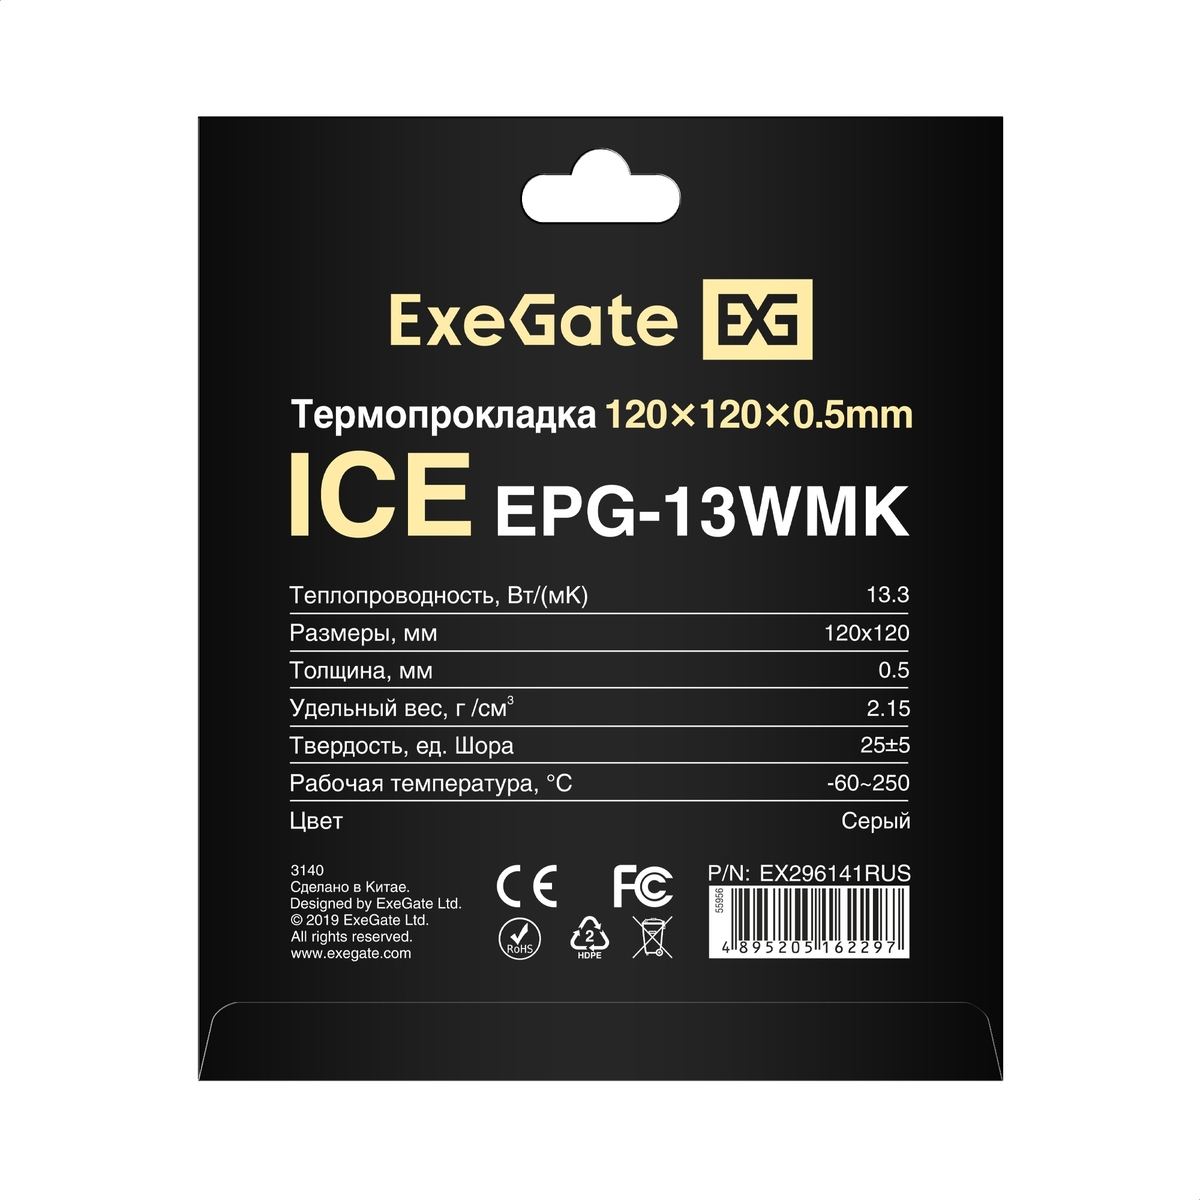  ExeGate Ice EPG-13WMK 120x120x0.5